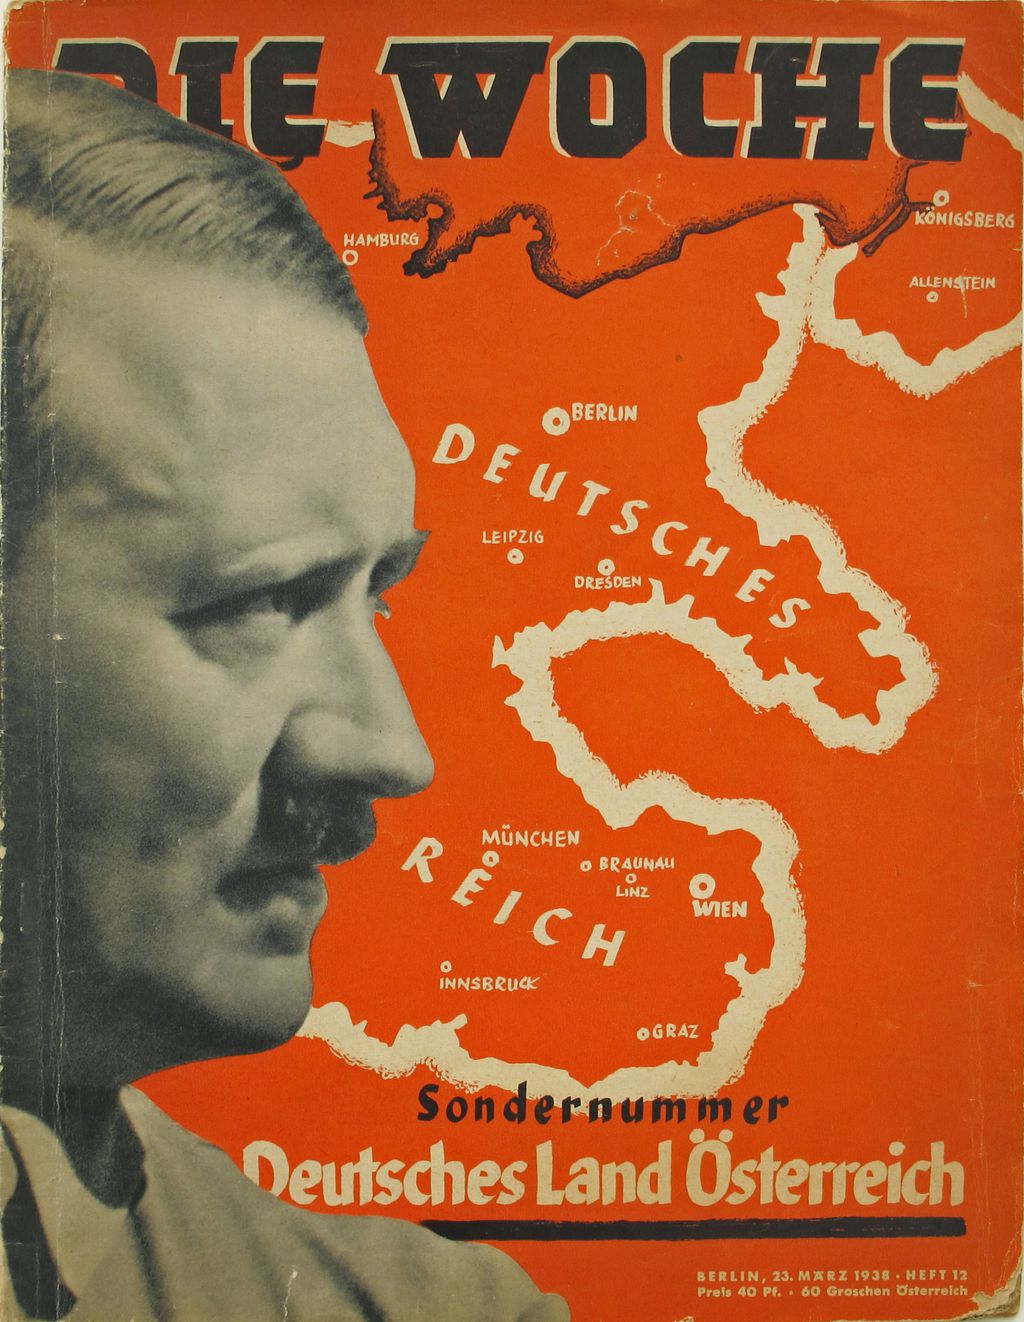 Exponat: Zeitschrift: "Deutsches Land Österreich", 1938